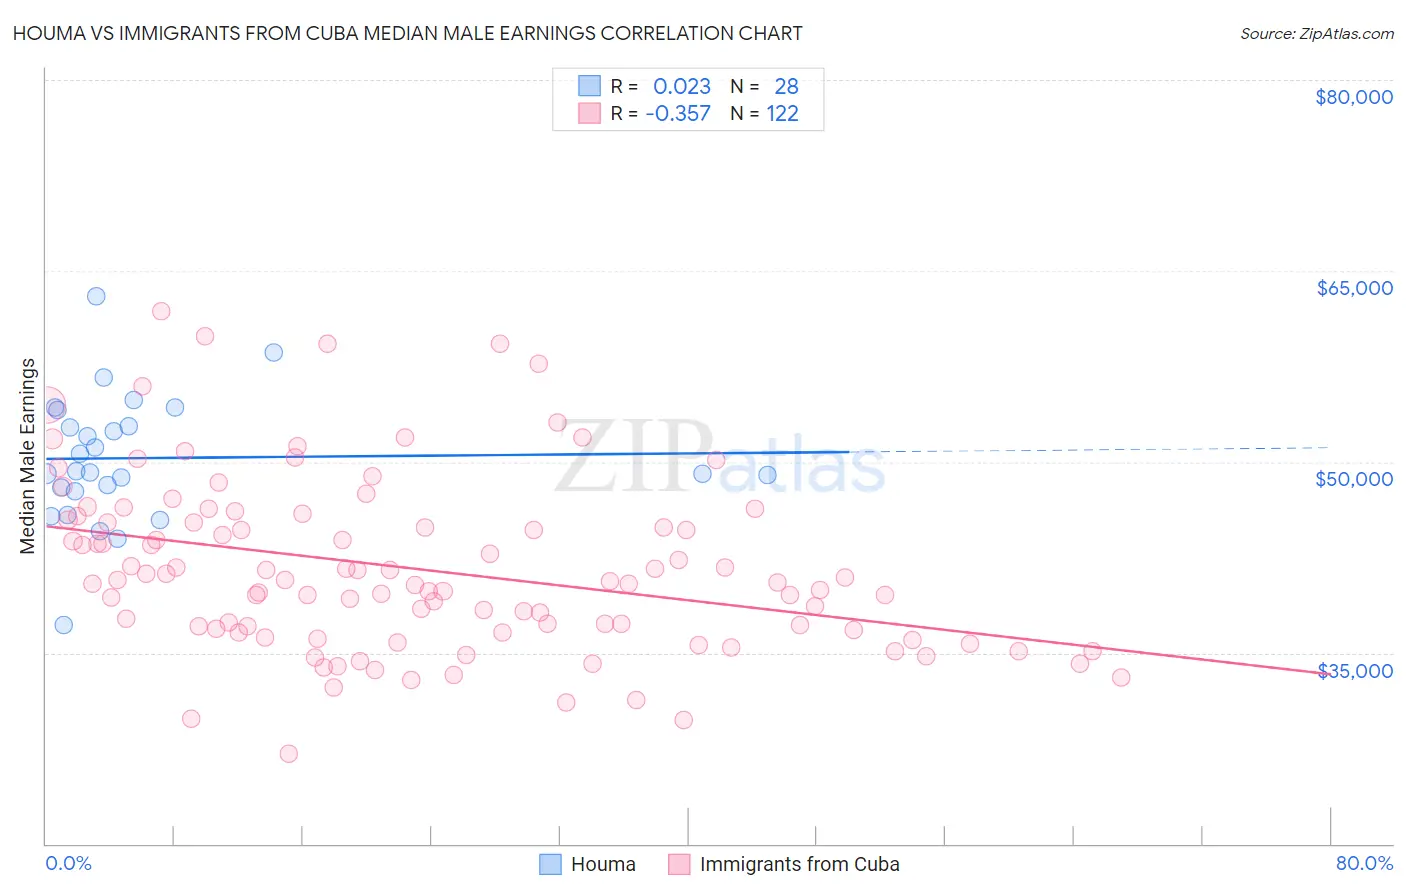 Houma vs Immigrants from Cuba Median Male Earnings